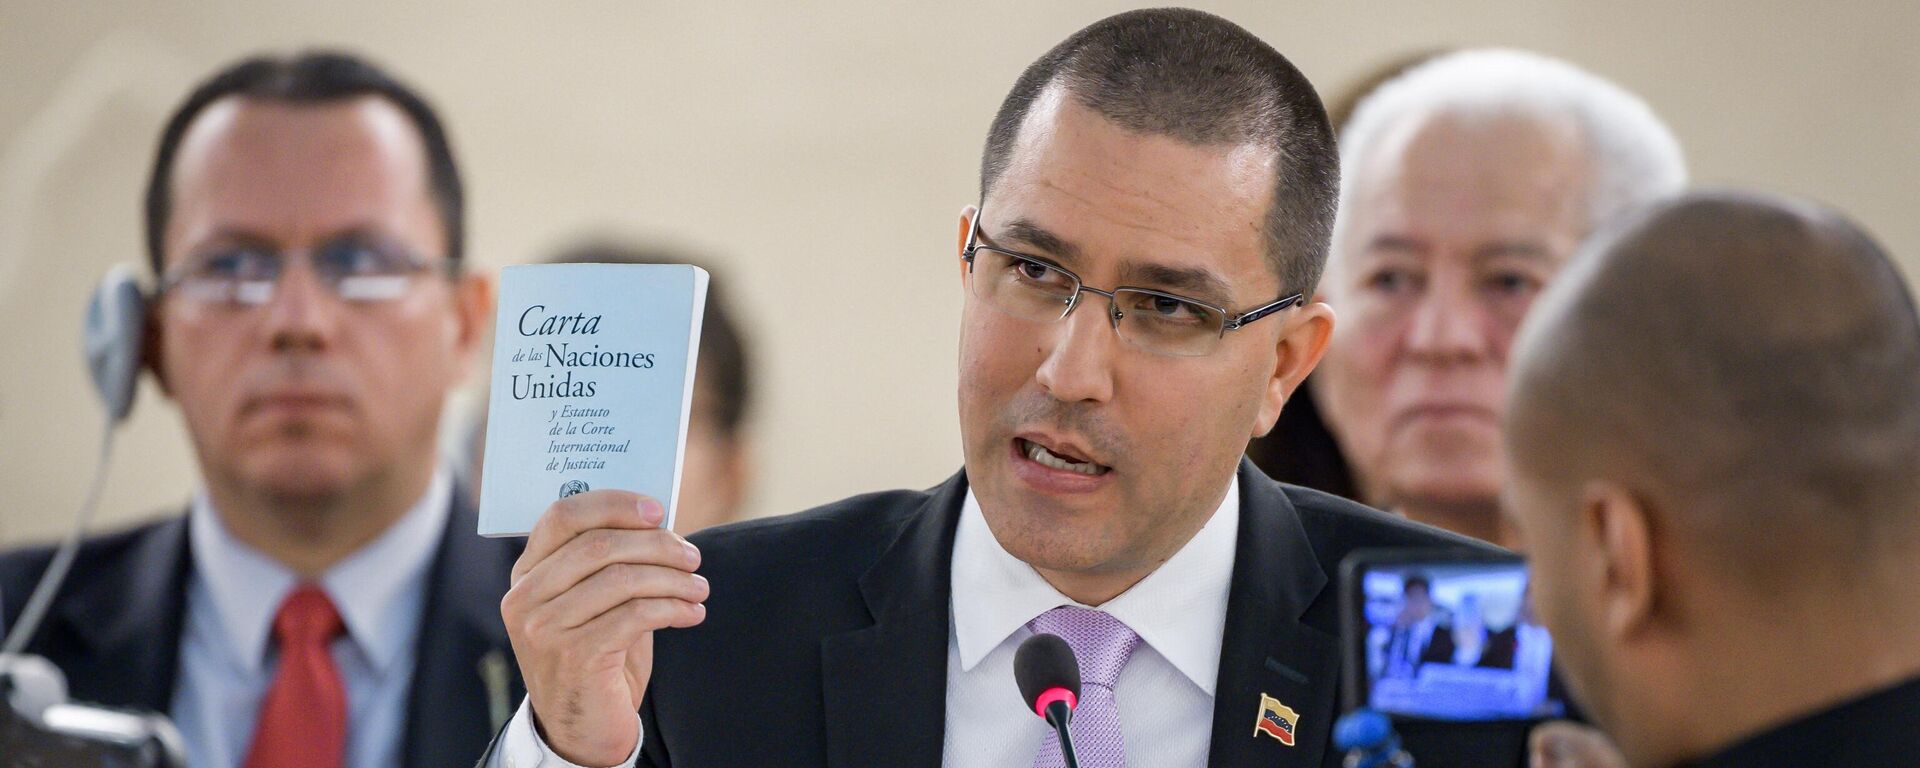 El ministro de Relaciones Exteriores de Venezuela, Jorge Arreaza, muestra la carta de las Naciones Unidas durante su discurso ante el Consejo de Derechos Humanos de las Naciones Unidas el 12 de septiembre de 2019 en Ginebra. - Sputnik Mundo, 1920, 06.03.2021